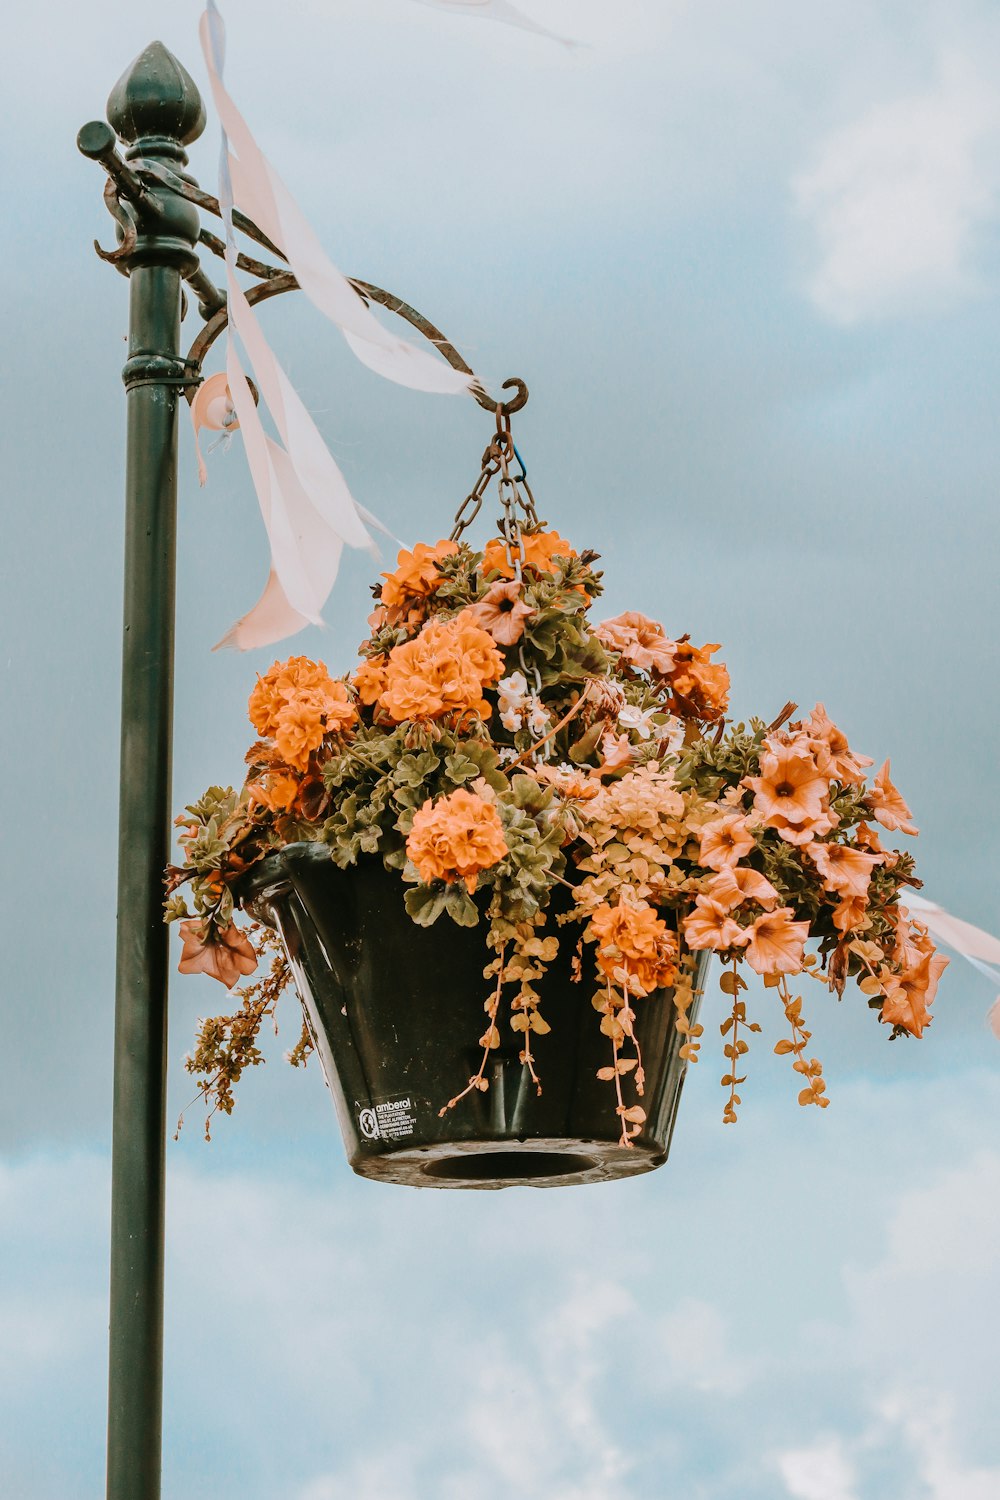 a flower pot hanging from a street light